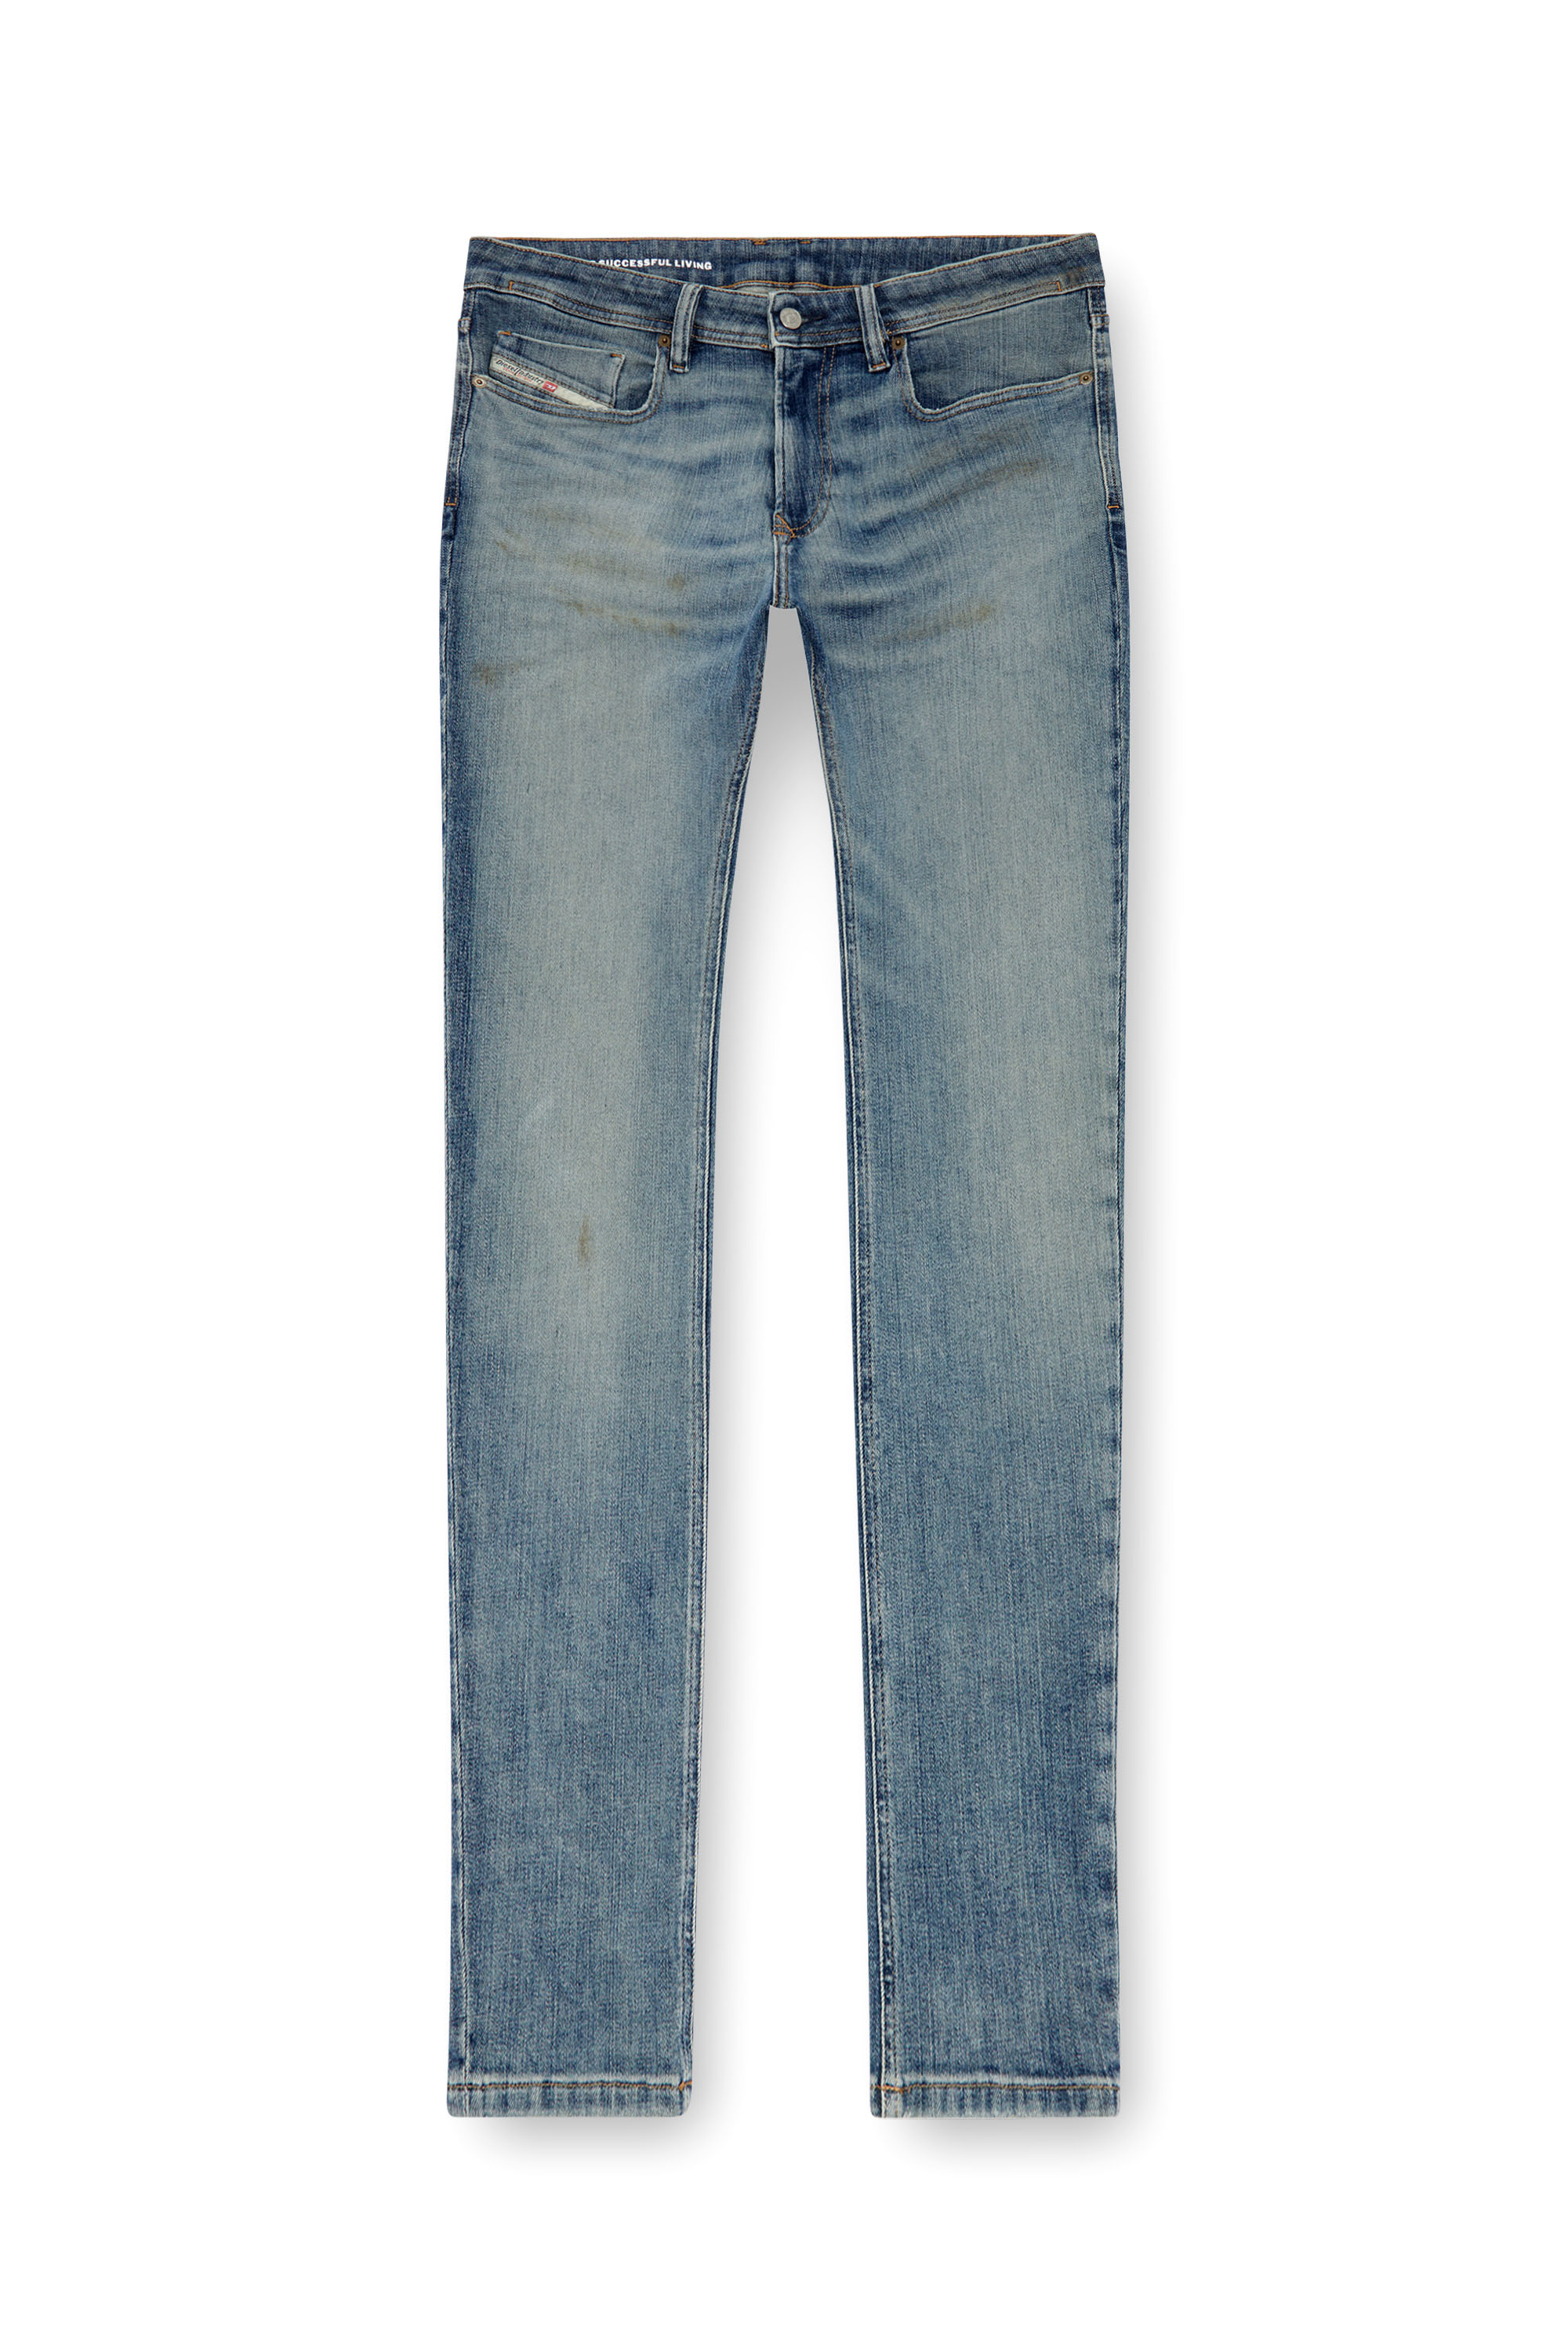 Diesel - Man Skinny Jeans 1979 Sleenker 0GRDE, Medium blue - Image 5